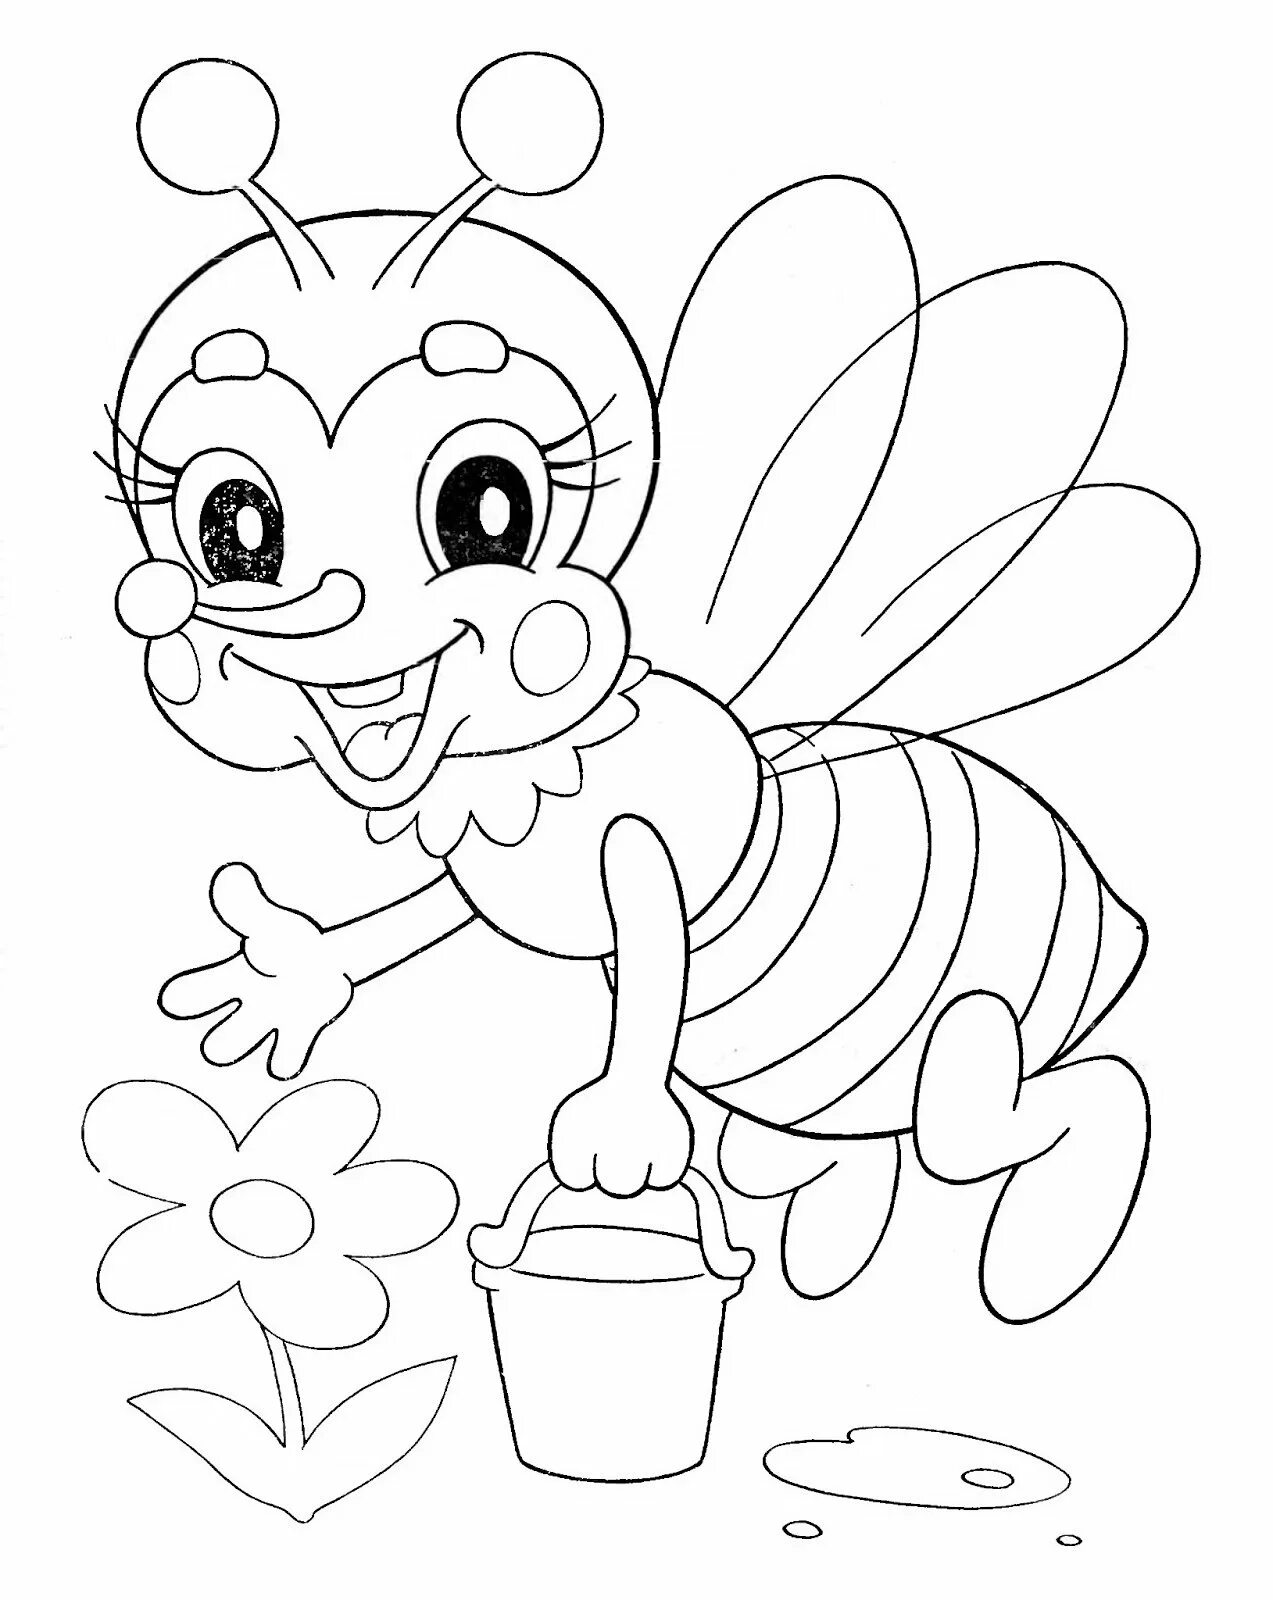 Пчела раскраска. Раскраска пчёлка для детей. Пчелка раскраска для малышей. Пчела раскраска для детей. Раскраска пчела для детей